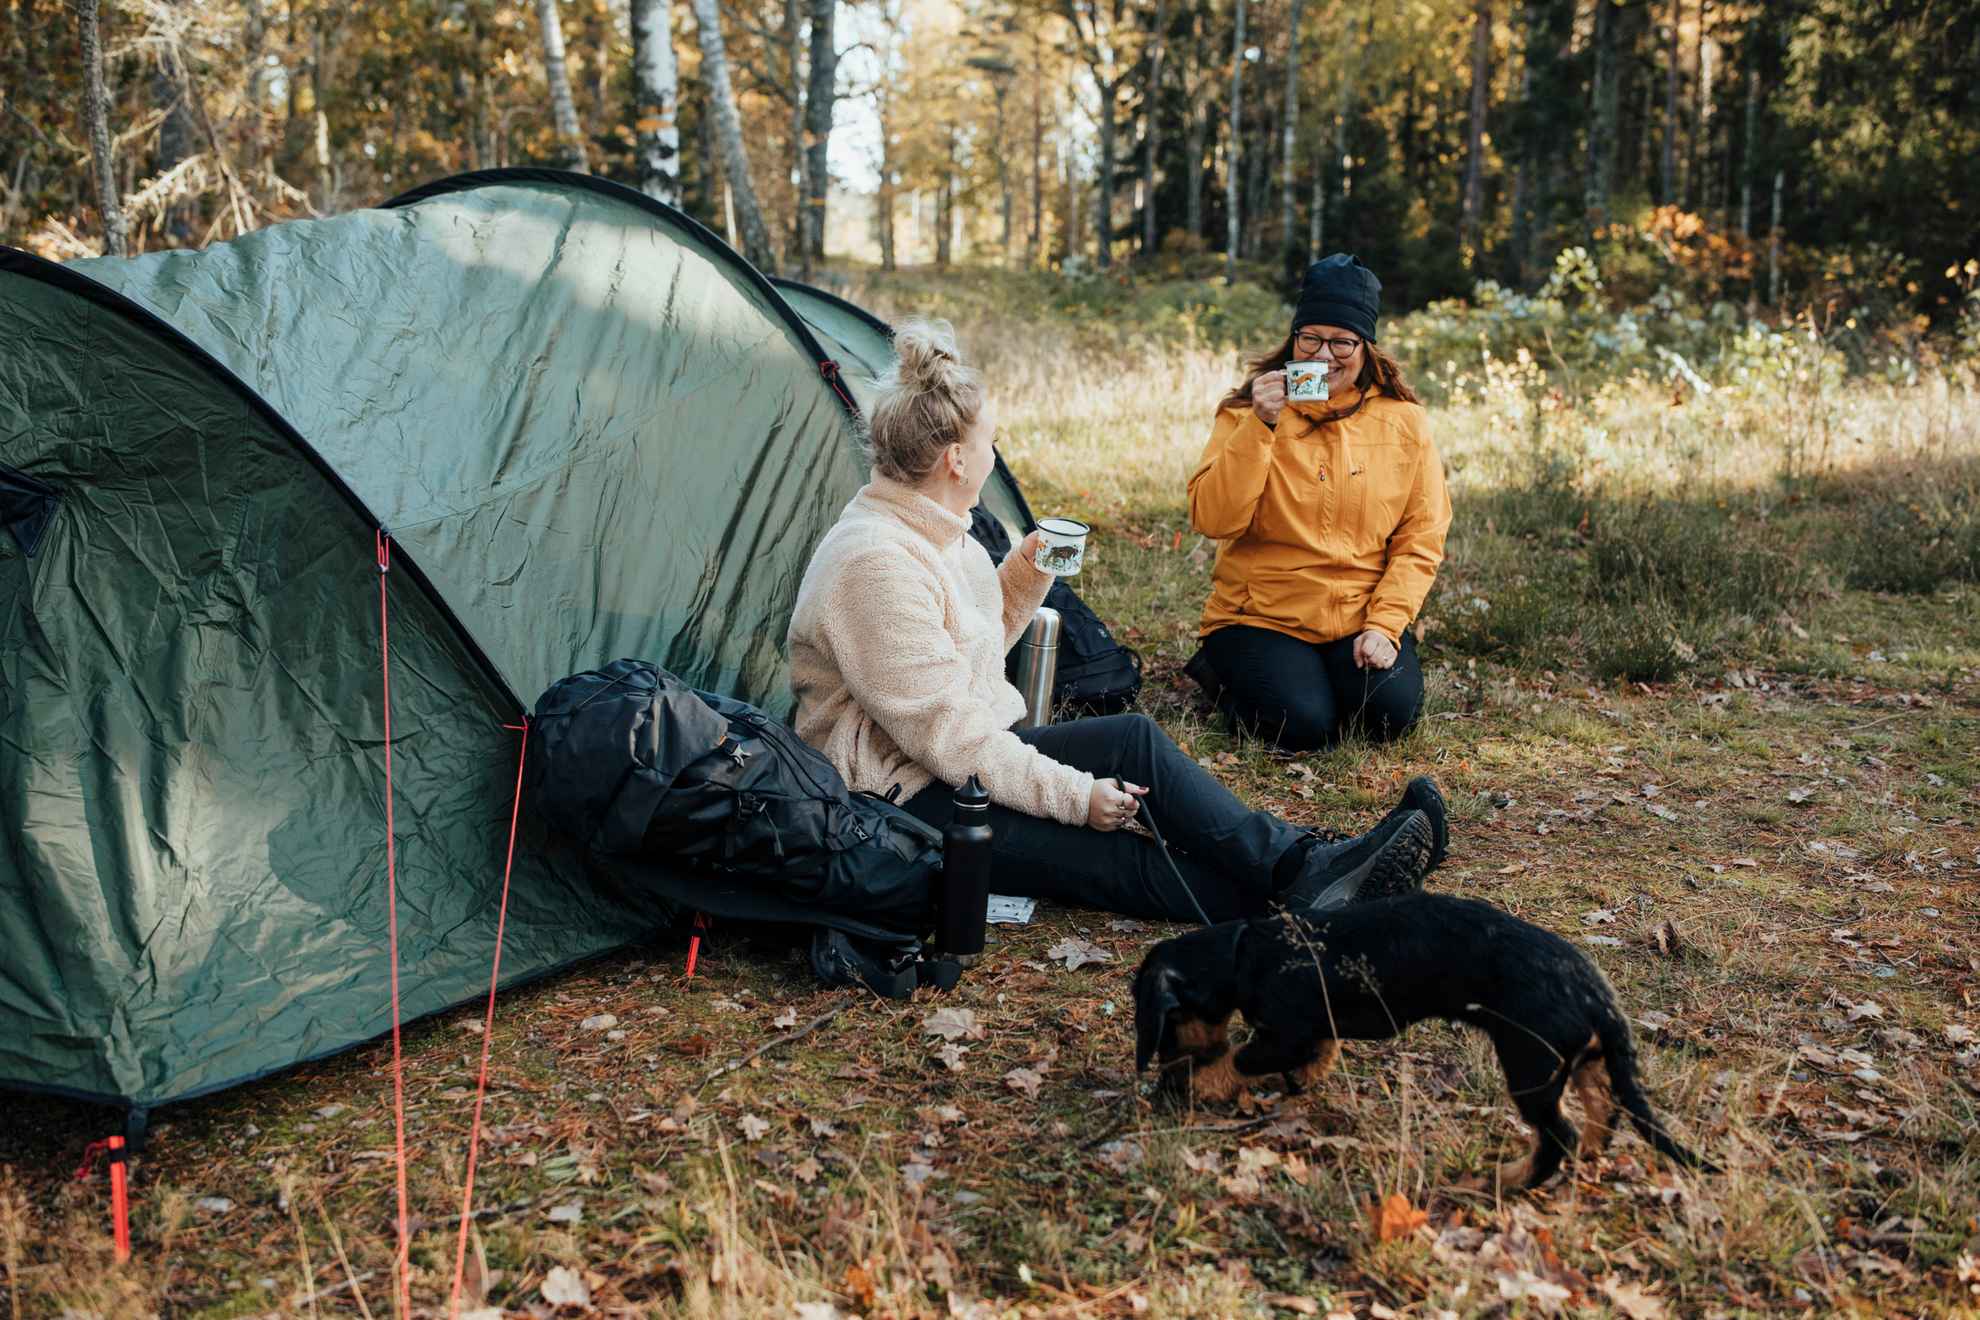 Deux femmes vêtues de vêtements de randonnée sont assises par terre à côté d'une tente et boivent du café dans des tasses. Au premier plan, on voit un teckel noir.